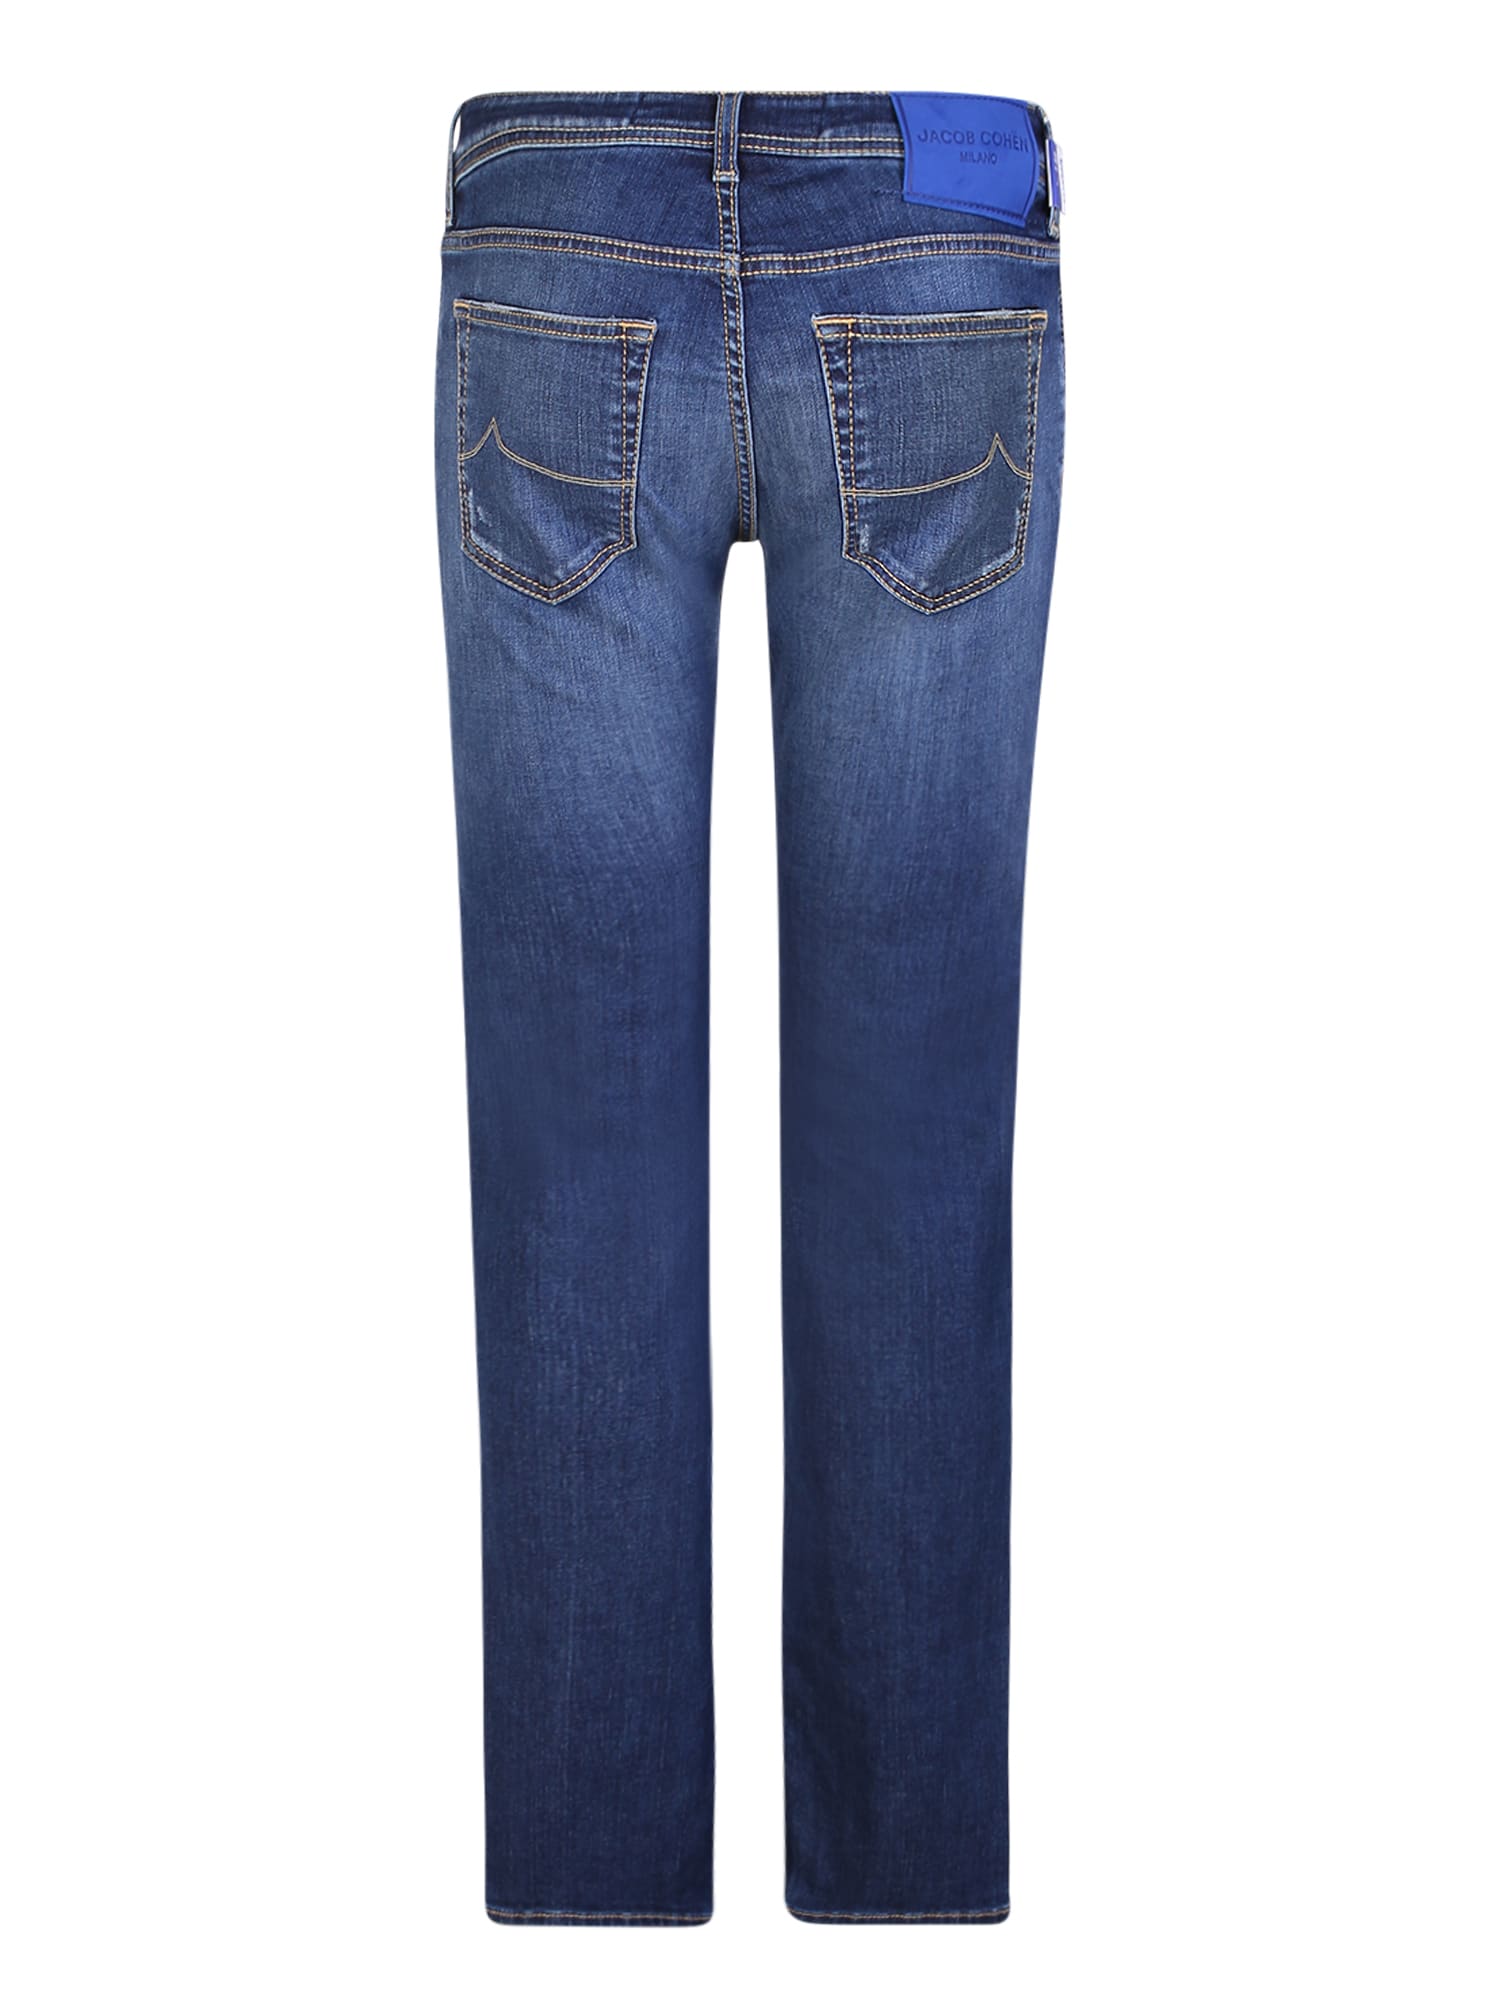 Shop Jacob Cohen Slim Cut Blue Jeans